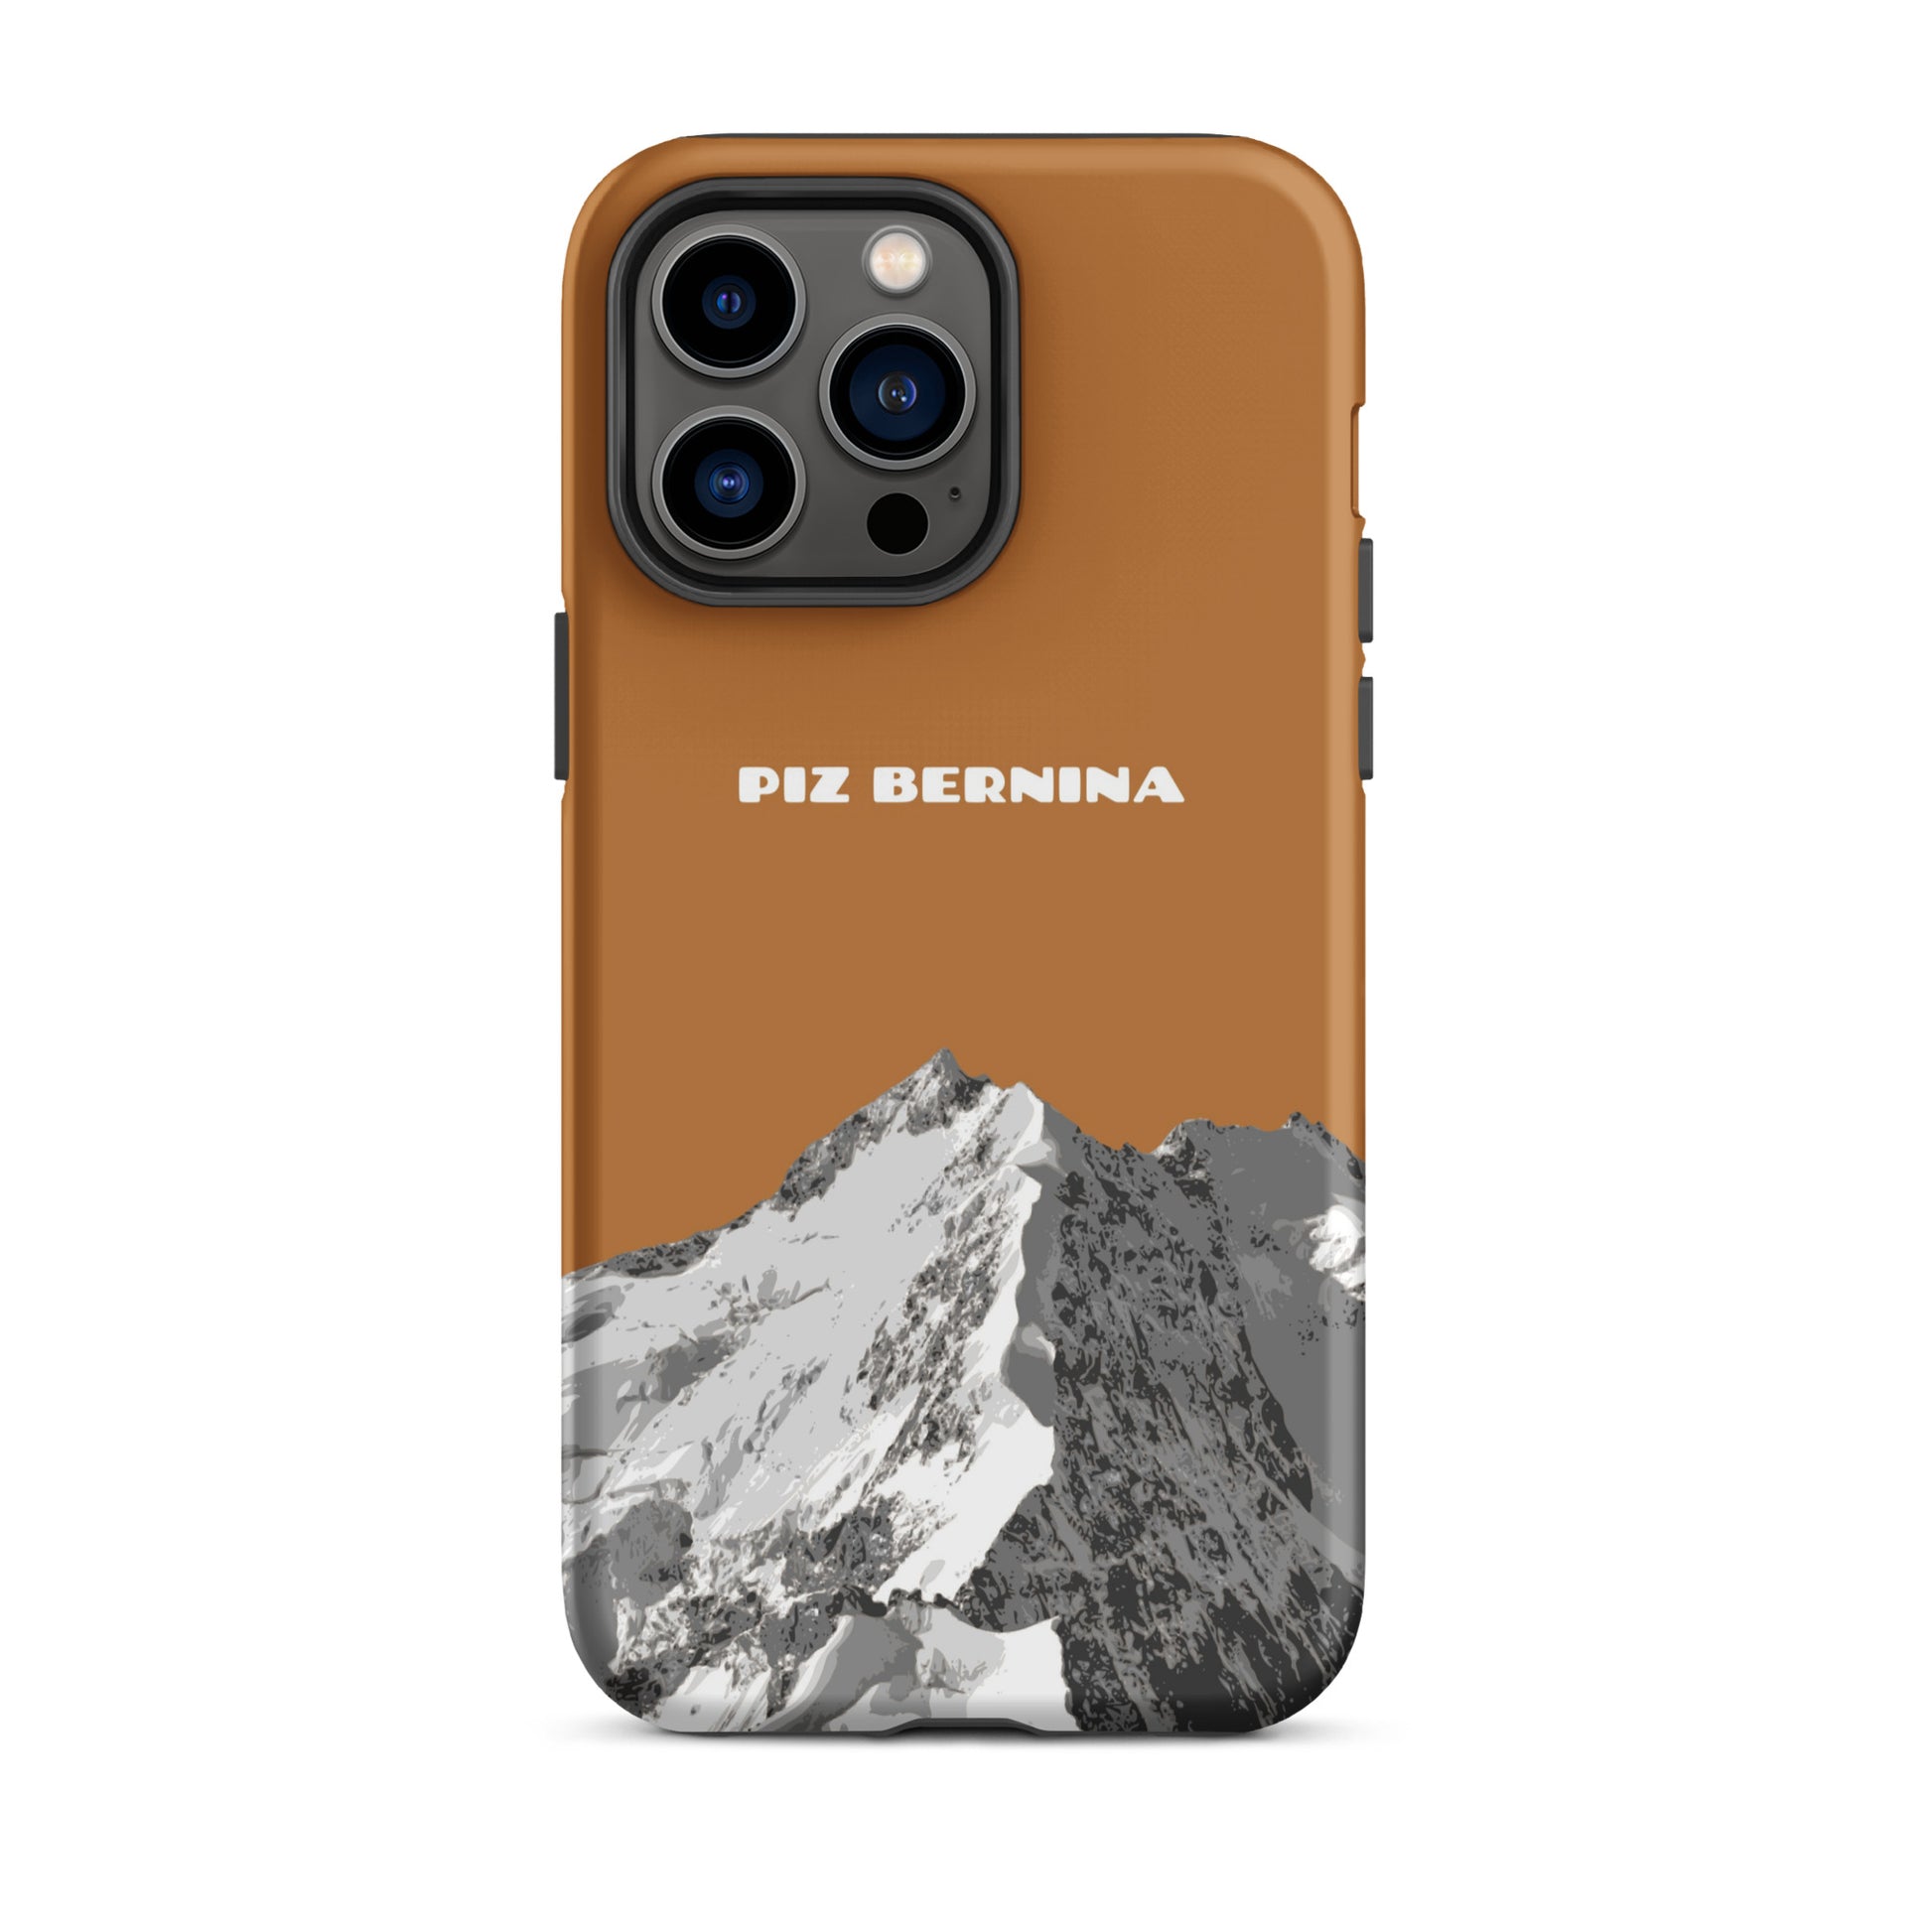 Hülle für das iPhone 14 Pro Max von Apple in der Farbe Kupfer, dass den Piz Bernina in Graubünden zeigt.